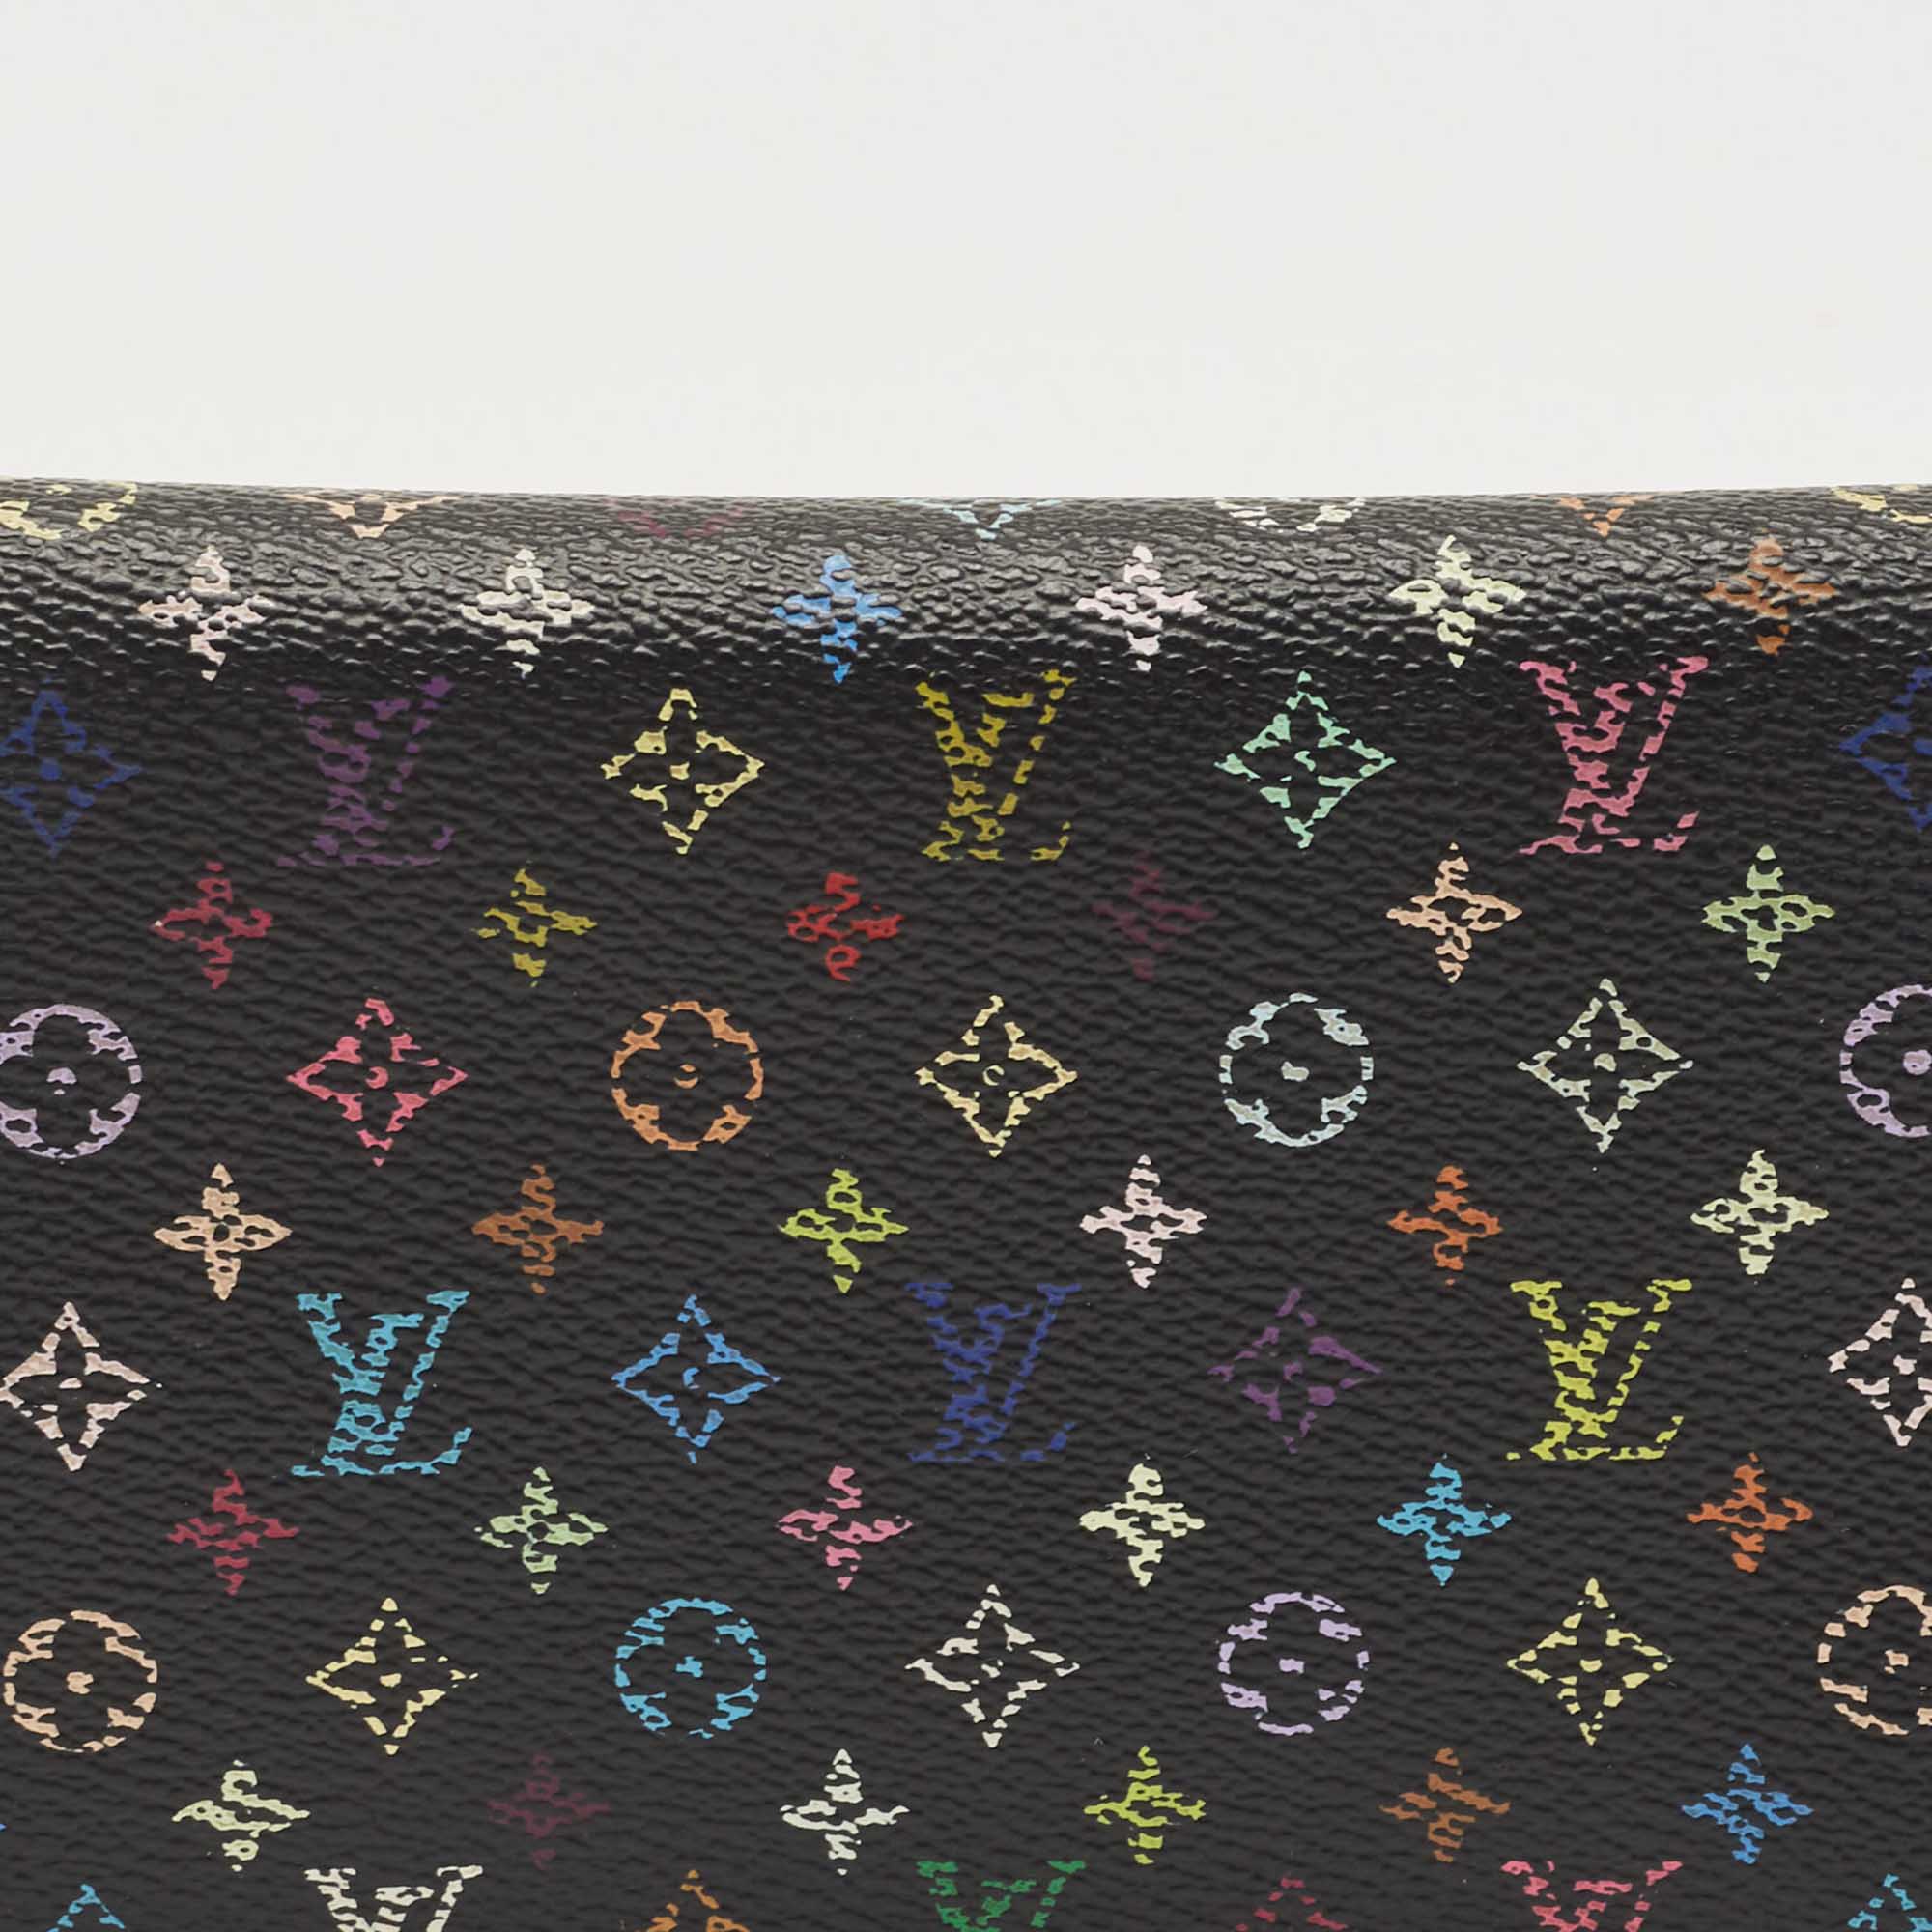 Louis Vuitton Black Monogram Multicolore Canvas Insolite Pistache Wallet